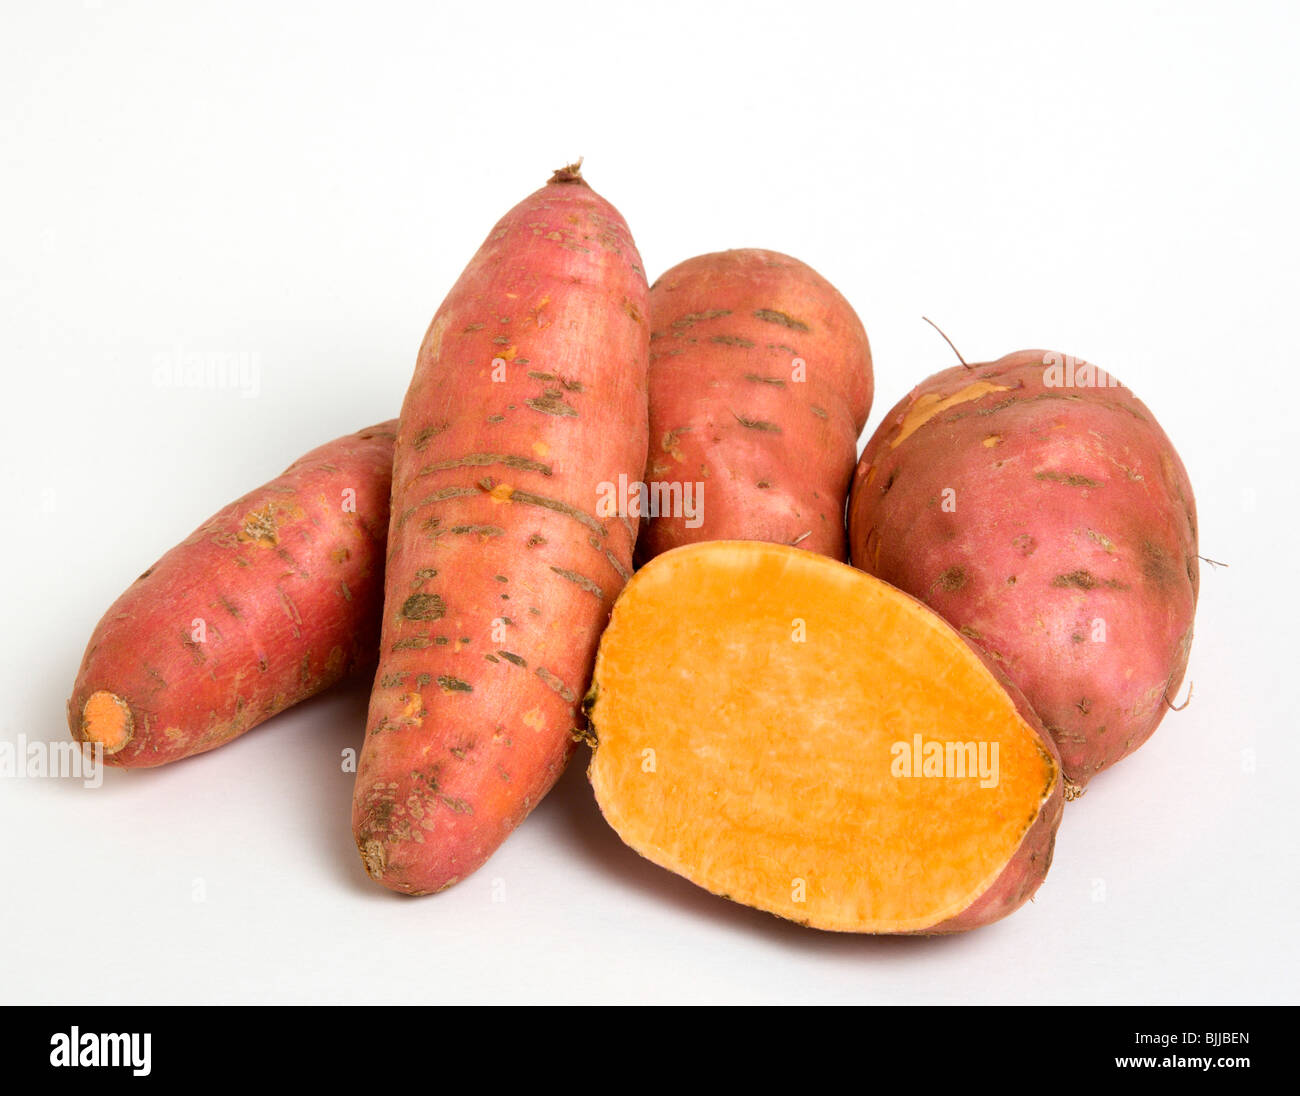 Stati Uniti d'America, cibo, ortaggi a radice, North American patate dolci su sfondo bianco con un taglio a metà per mostrare interno arancione Foto Stock